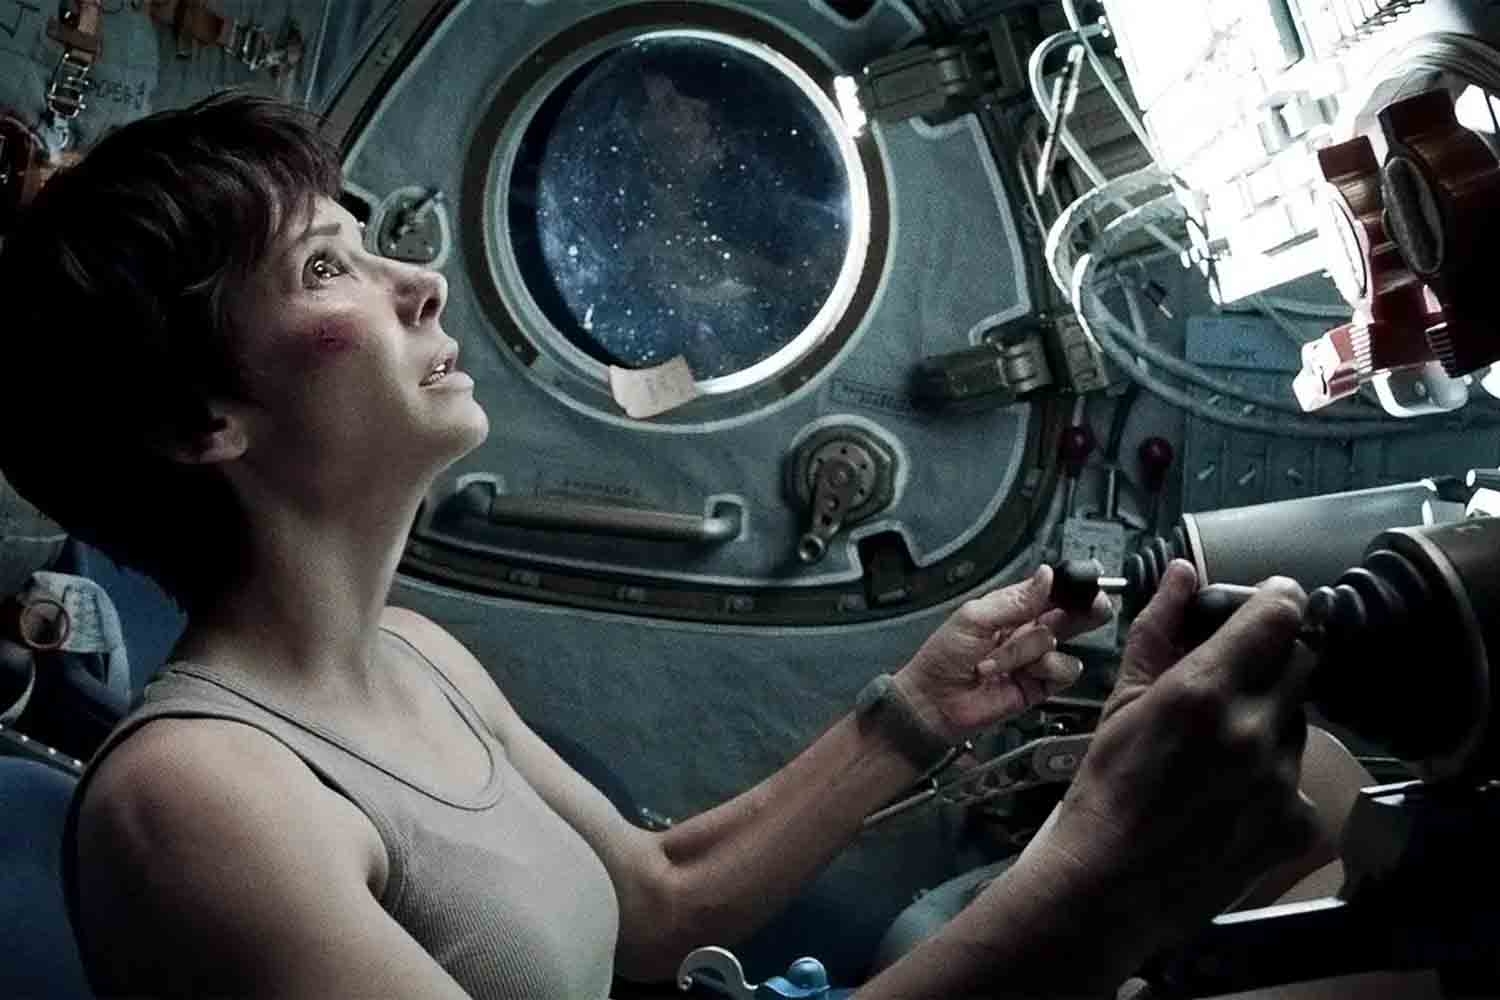 O thriller espacial “Gravidade” (2013) rendeu a Bullock aclamação da crítica por seu papel como Dra. Ryan Stone, uma astronauta perdida no espaço após um desastre com o ônibus espacial. Sandra confessou que ficou angustiada nas gravações e contou com a amizade de George Clooney para suportar o clima.